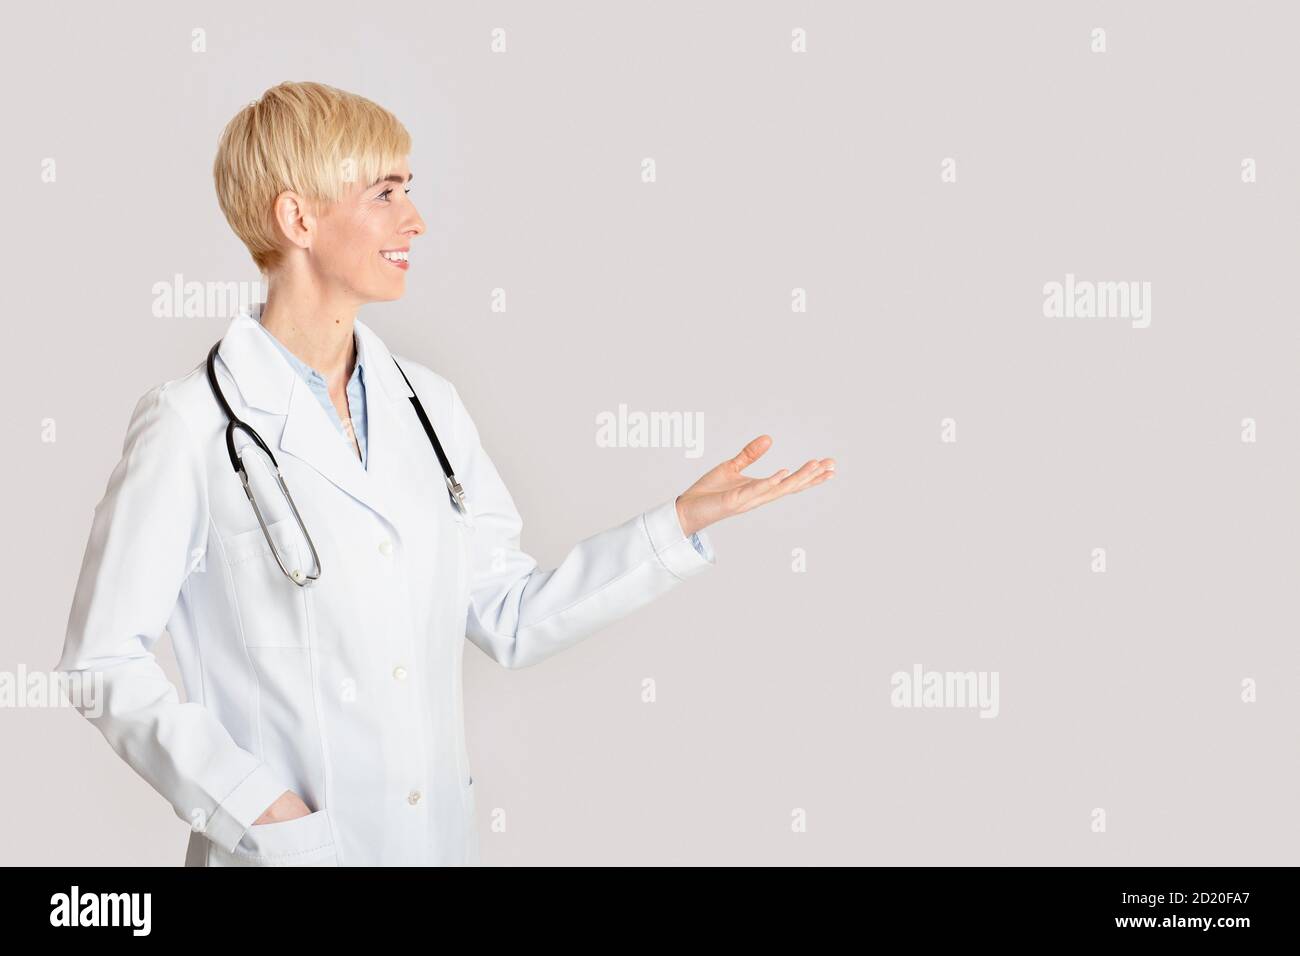 Gesundheitswesen, medizinische Fachkräfte und Arztbesuch. Freundliche weibliche Punkte mit der Hand auf leerem Raum Stockfoto